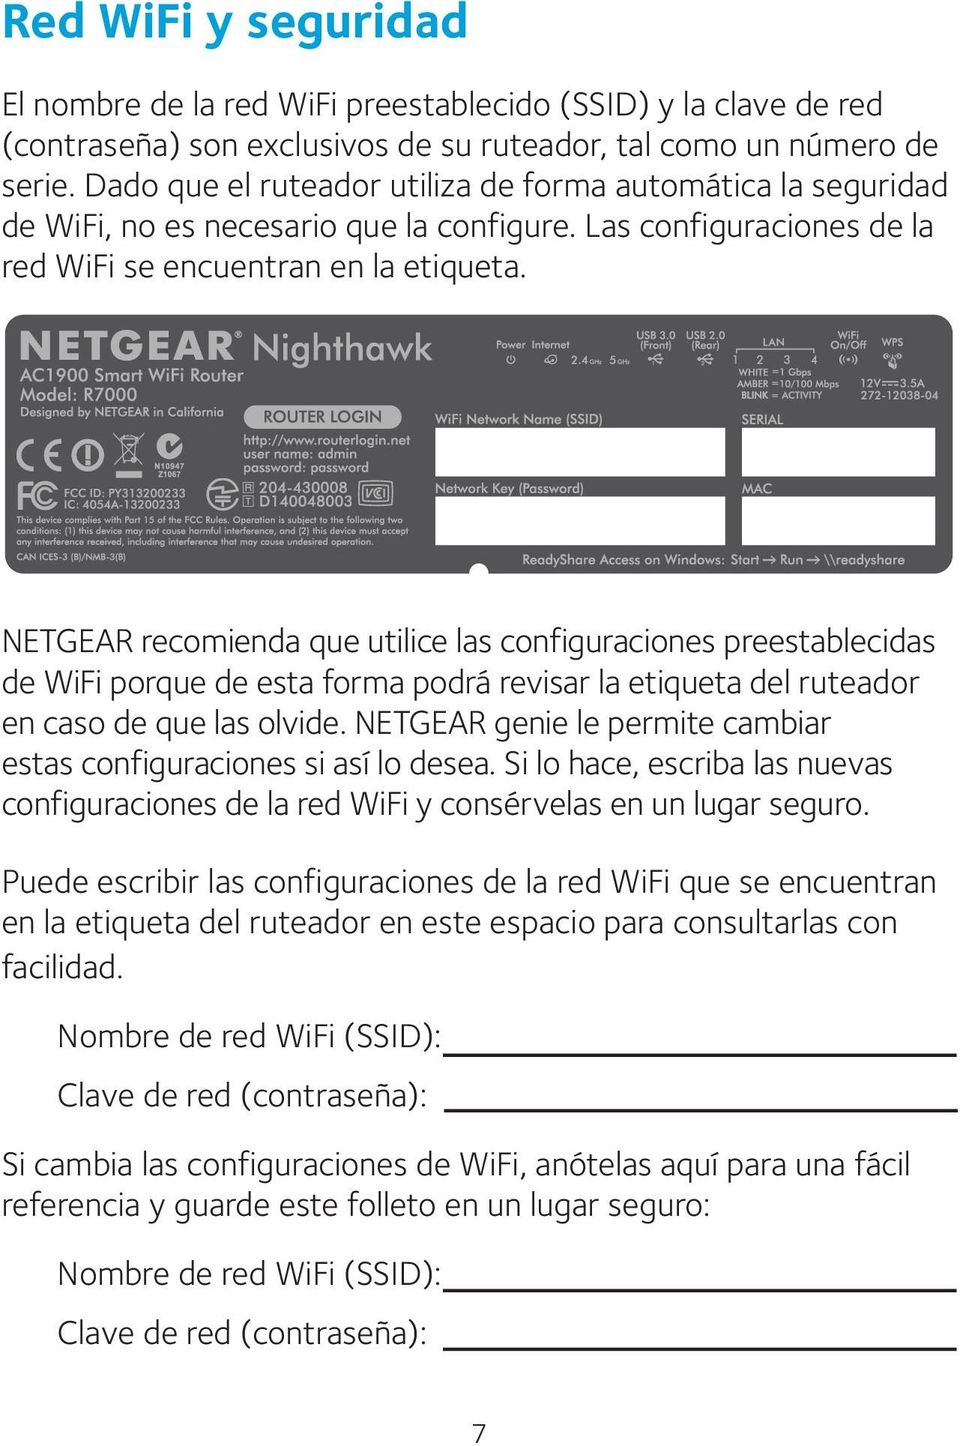 NETGEAR recomienda que utilice las configuraciones preestablecidas de WiFi porque de esta forma podrá revisar la etiqueta del ruteador en caso de que las olvide.